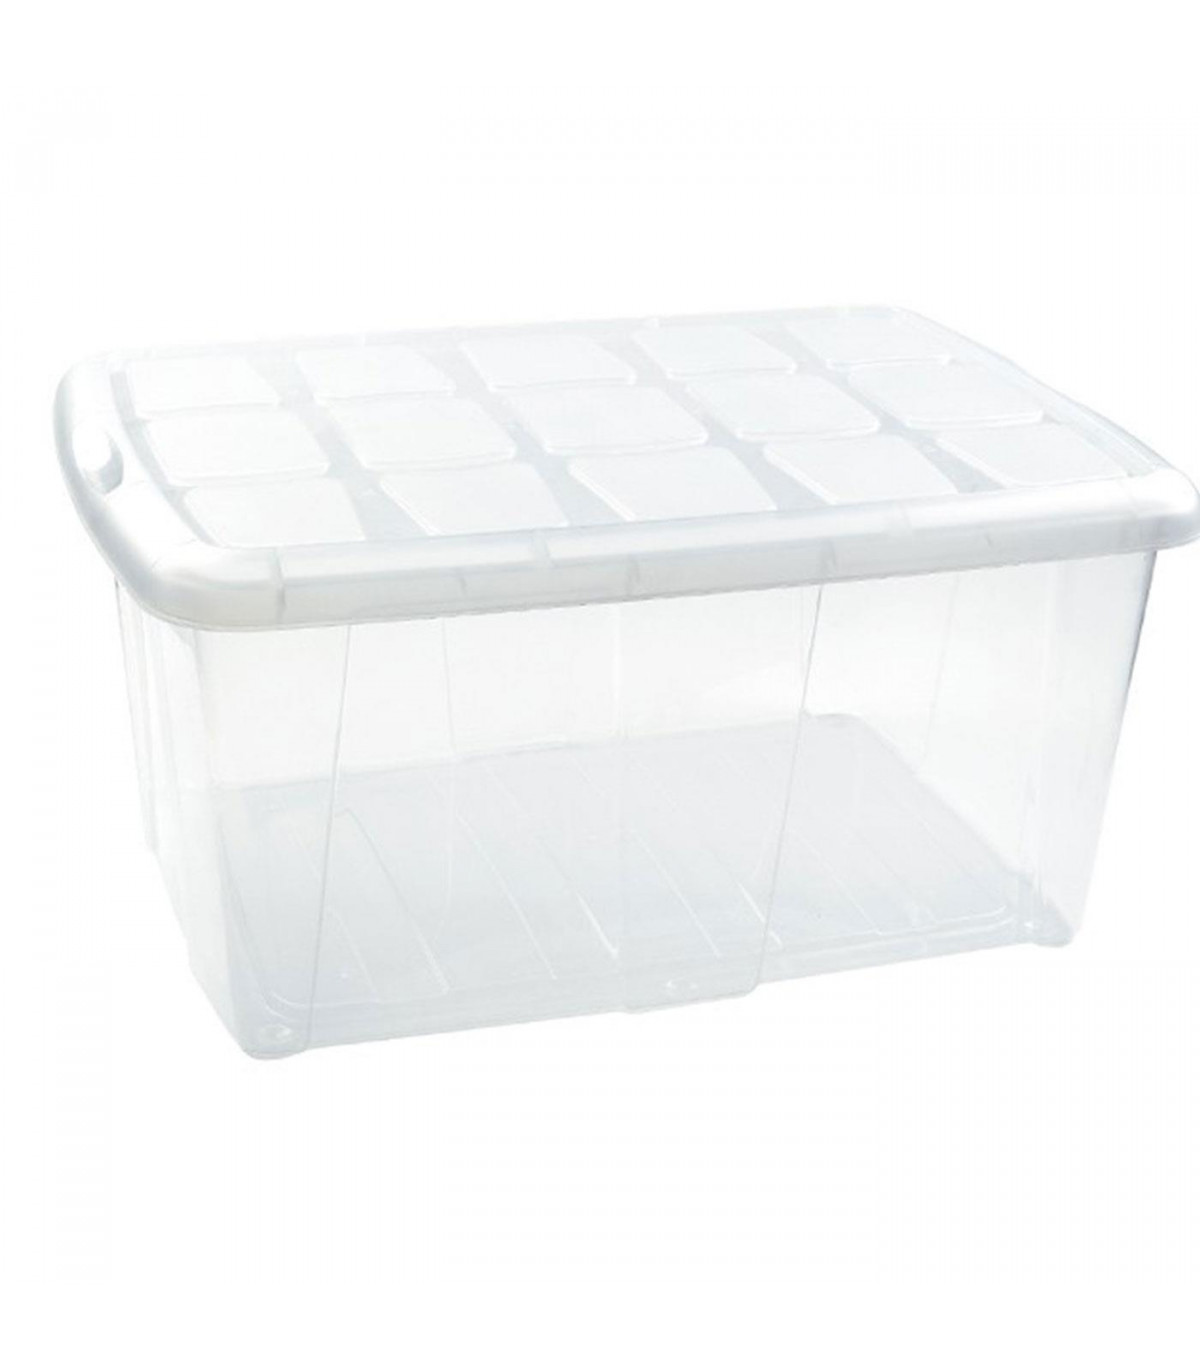 Tradineur - Caja de plástico transparente Nº 18, 60 litros